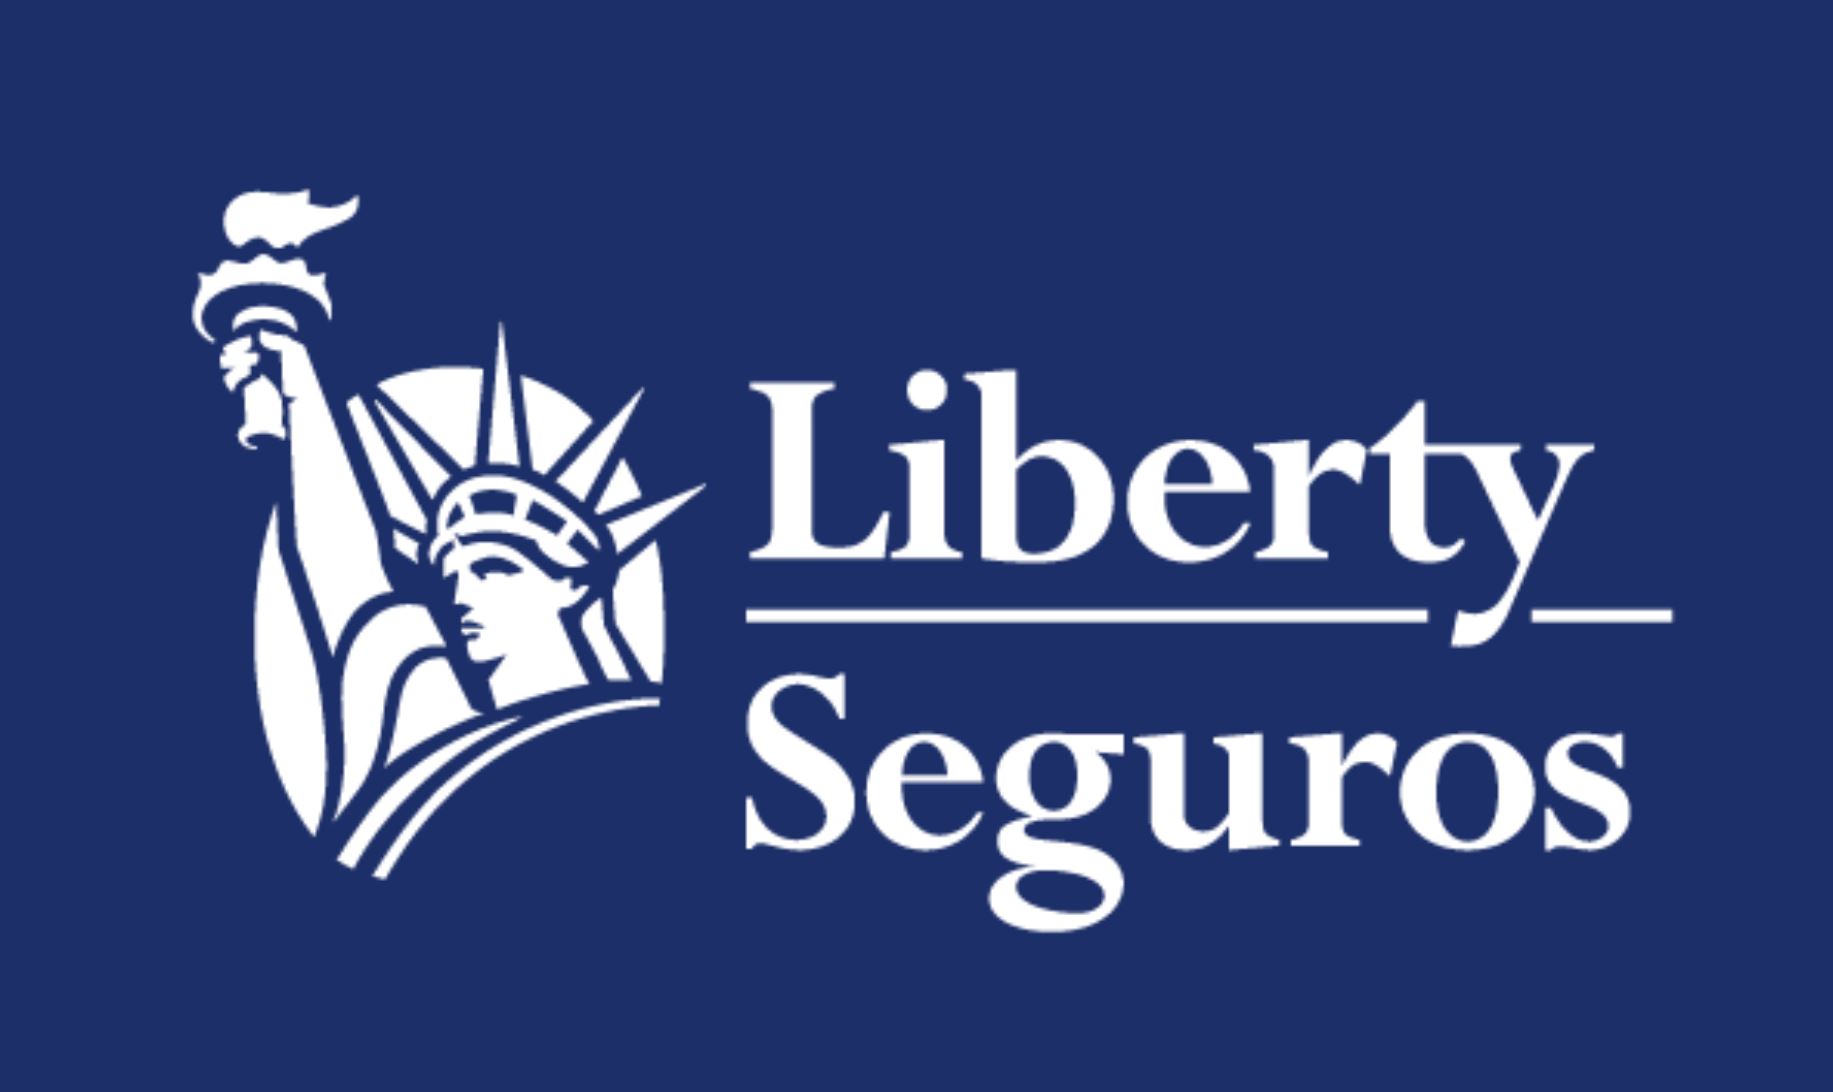 Liberty Seguros Private Healthcare